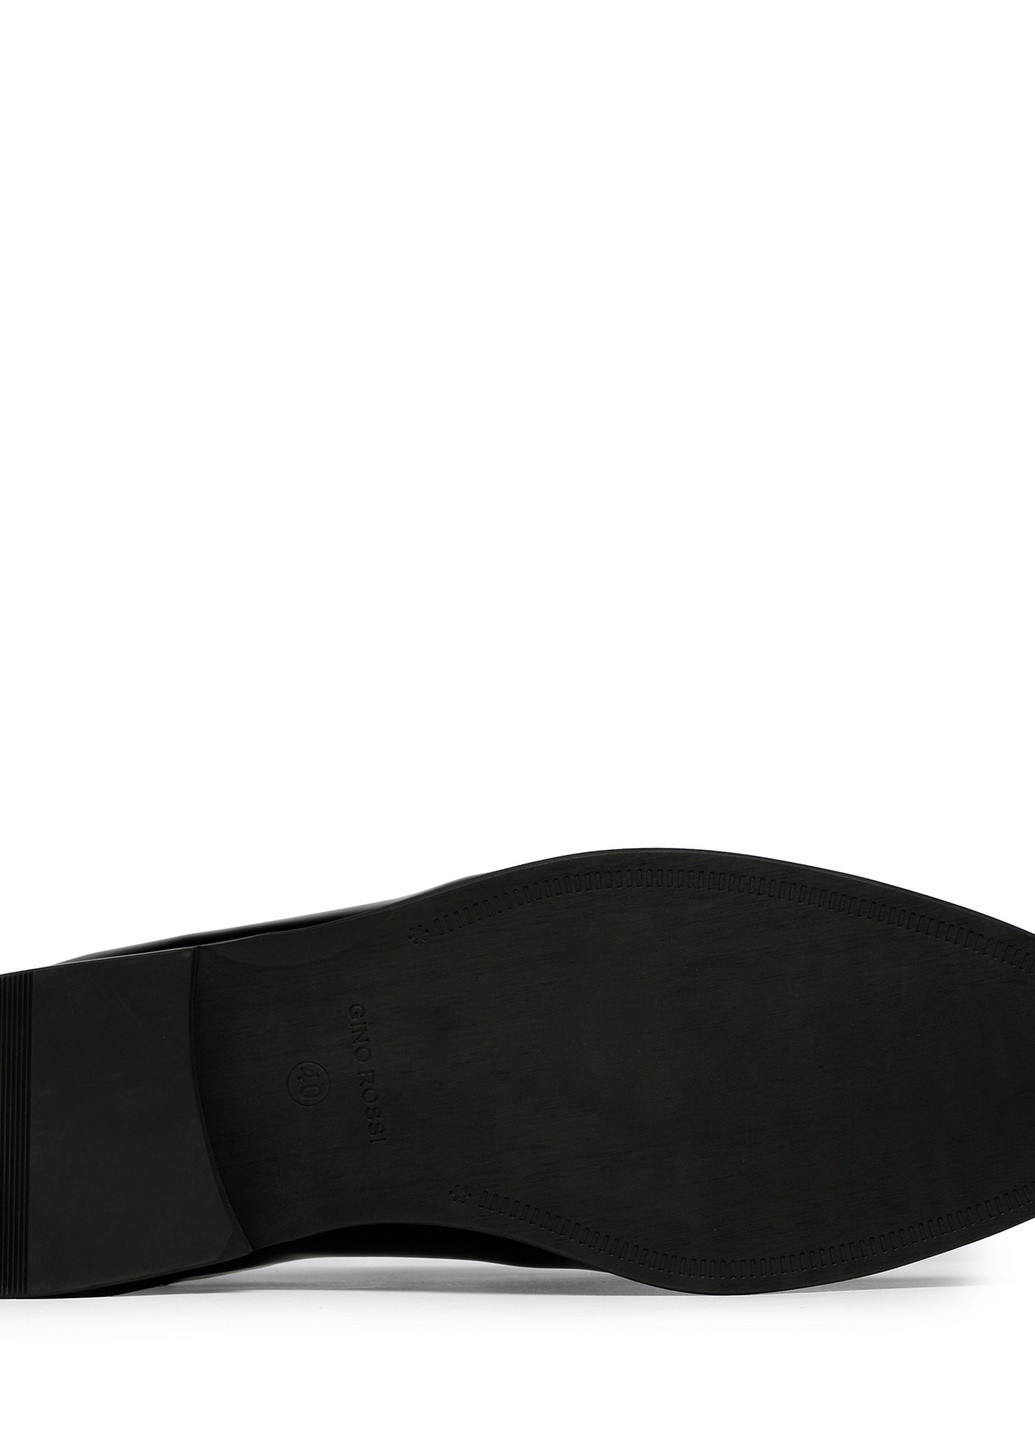 Черные осенние туфли giulio-01 122am Gino Rossi